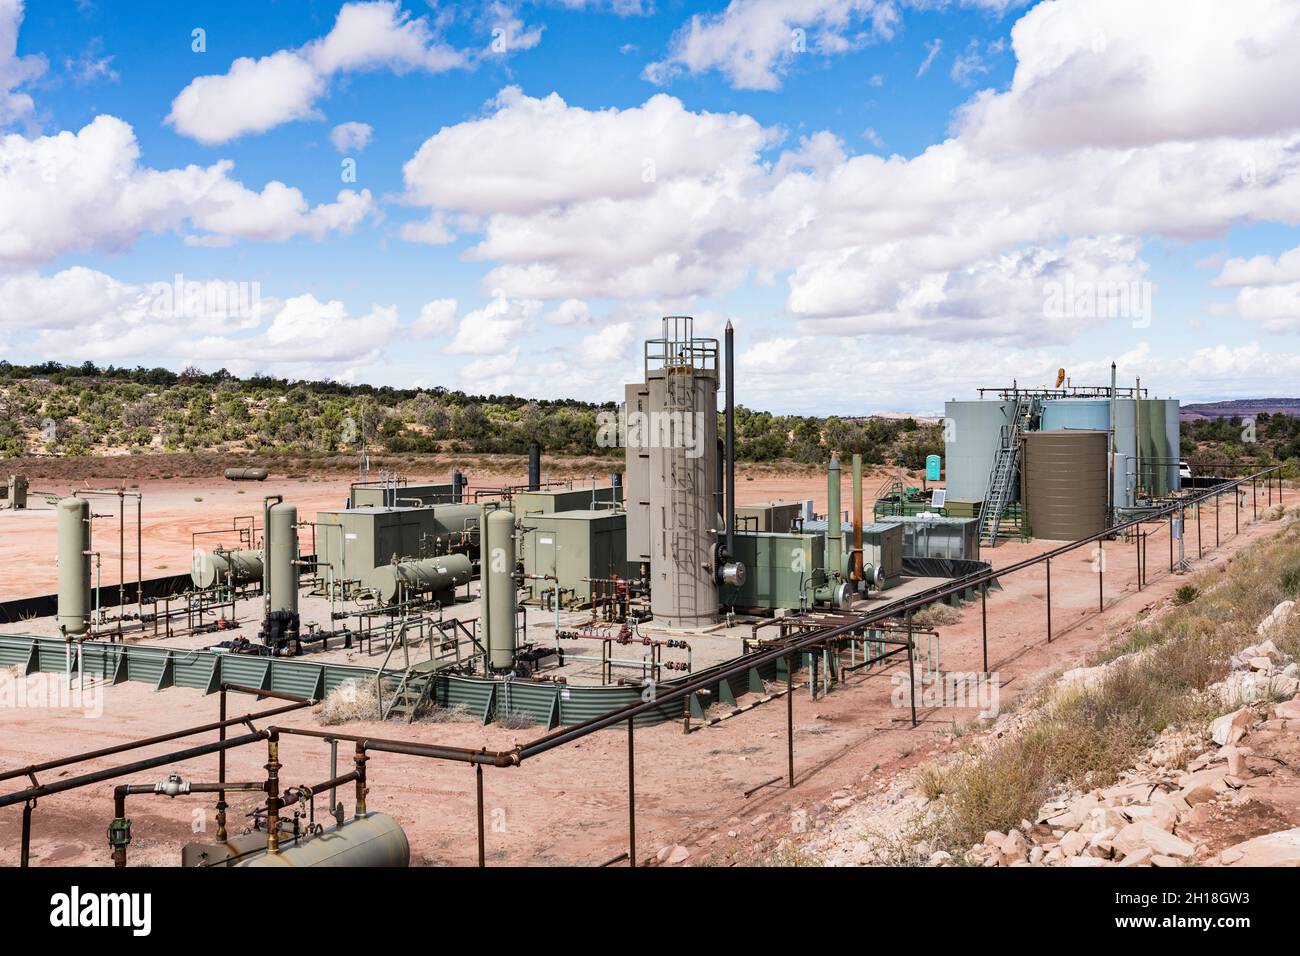 Les traiteurs de chauffage, les séparateurs et une batterie de réservoir de stockage de pétrole brut sur un puits de pétrole dans l'Utah. Banque D'Images